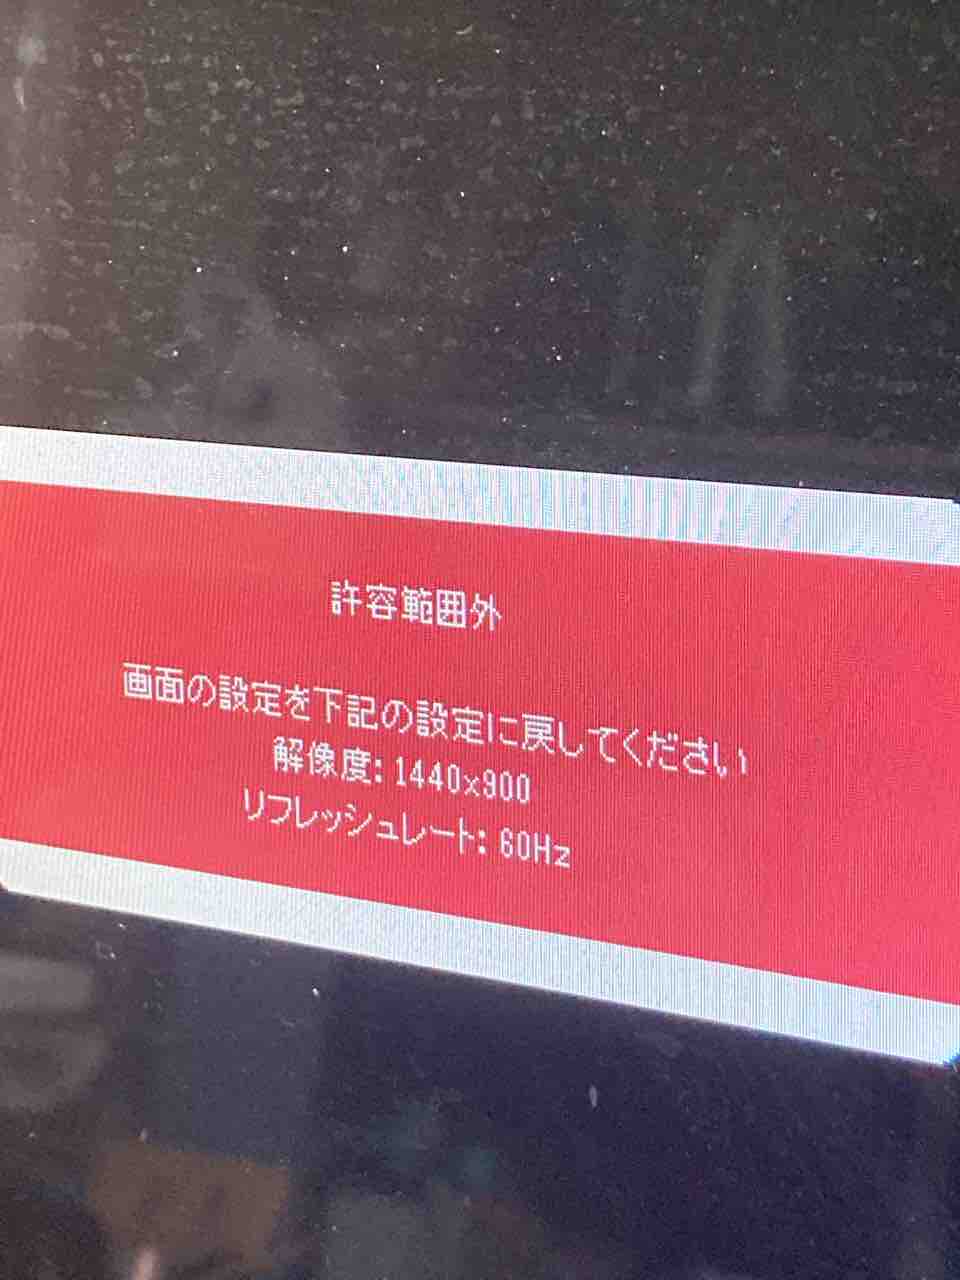 840円 半額SALE★ I O DATA LCD-AD191XB2